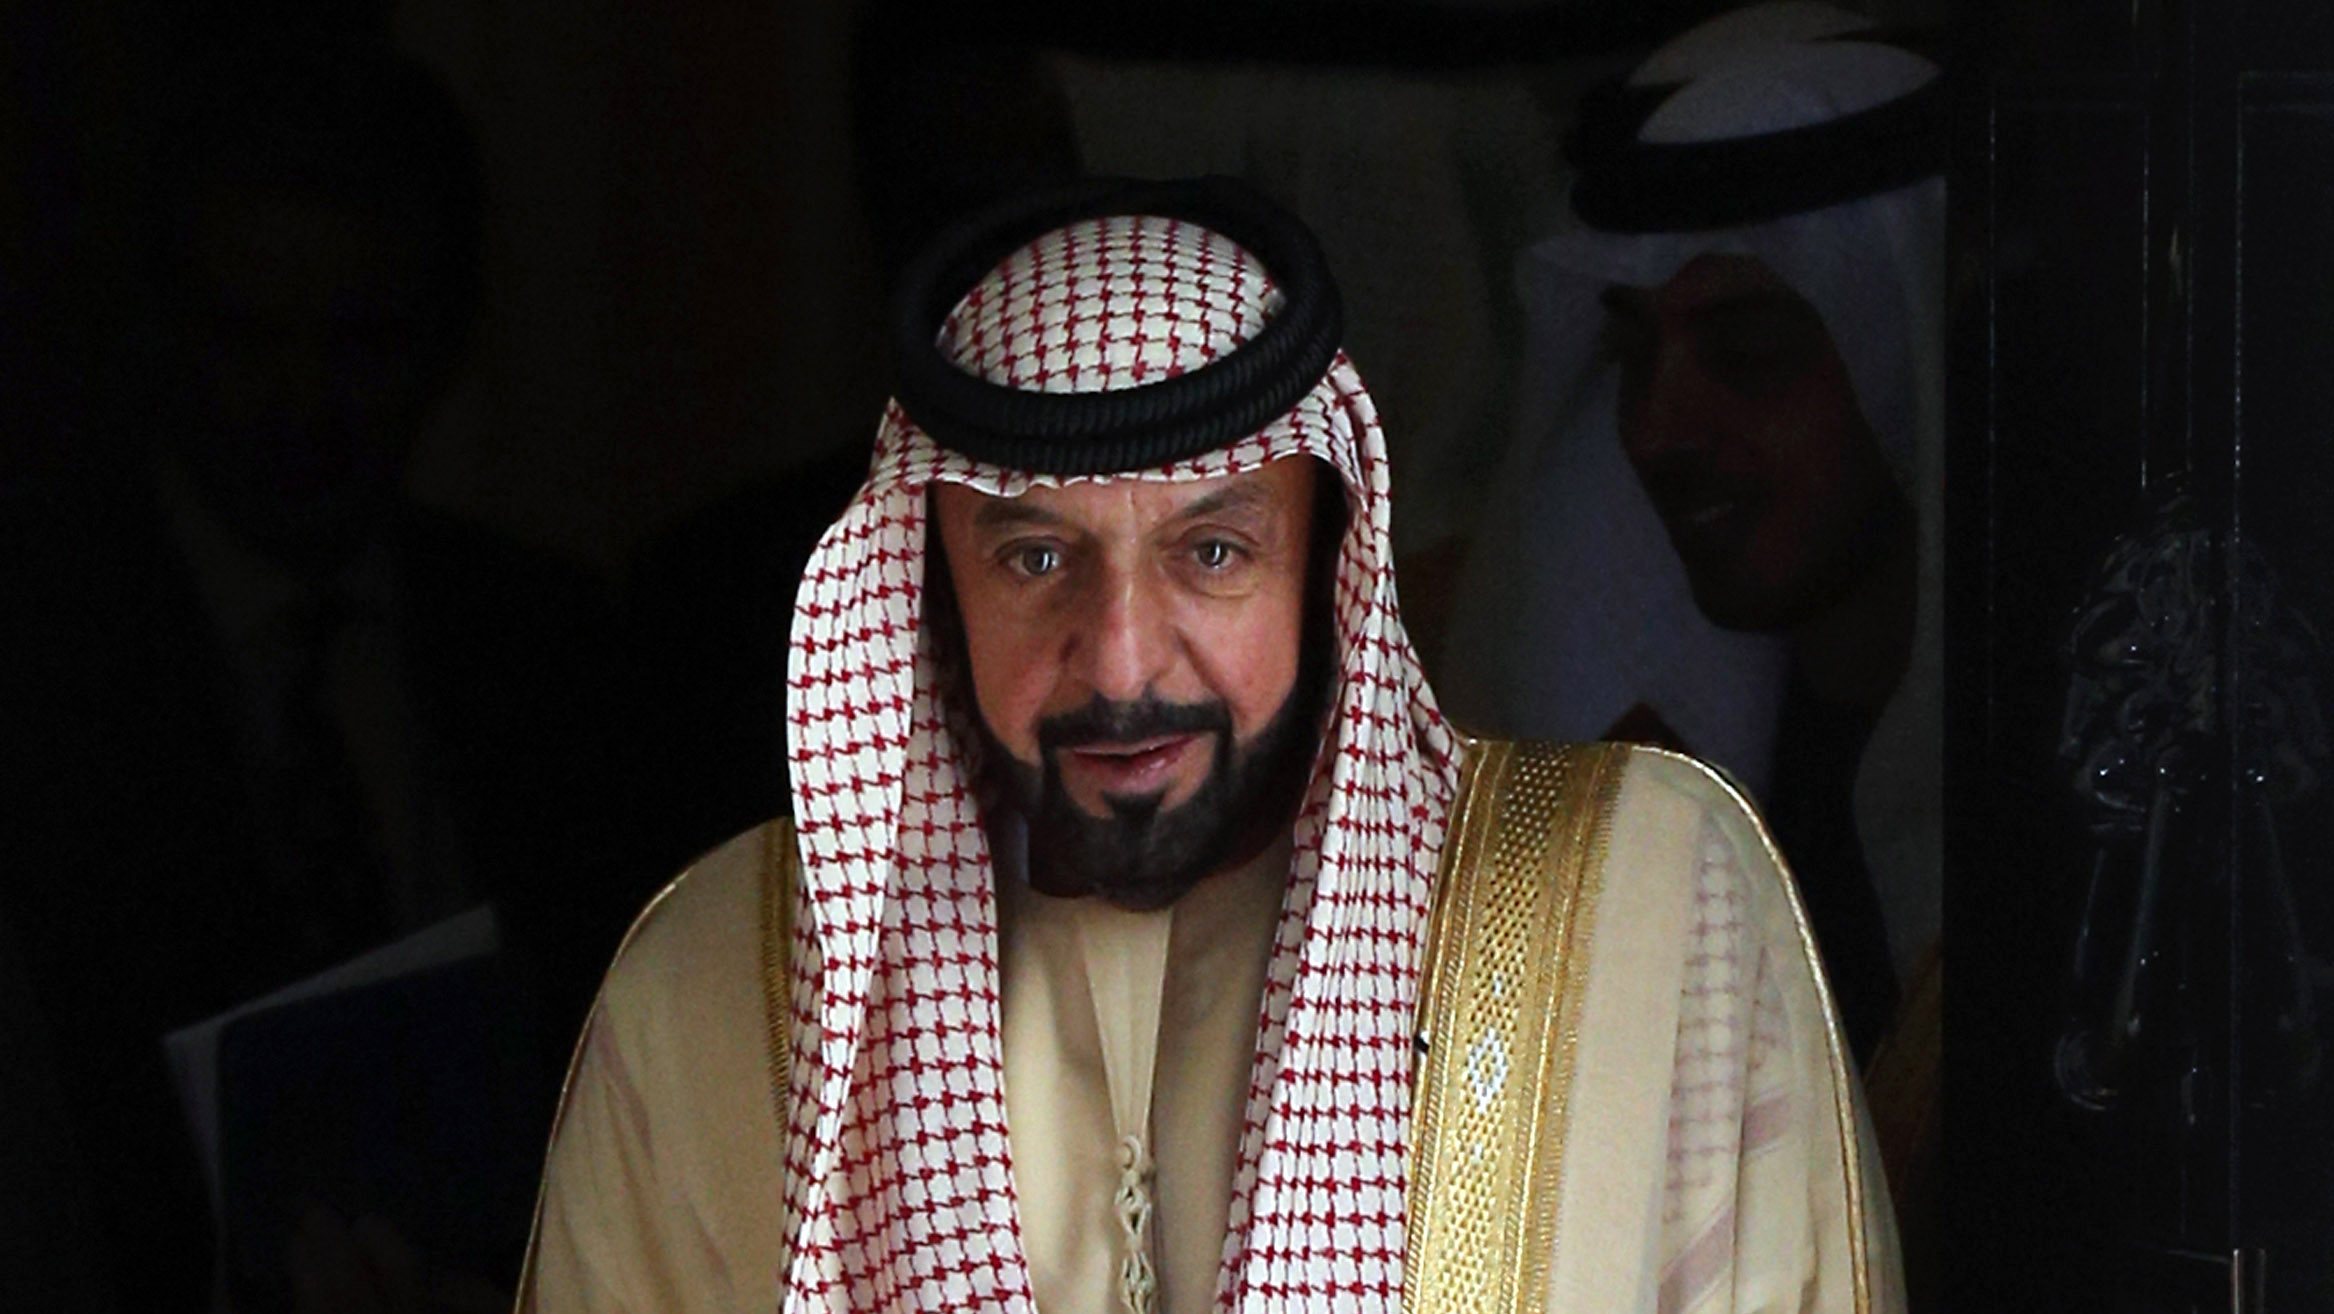 Morre presidente dos Emirados Árabes Unidos, afirma agência